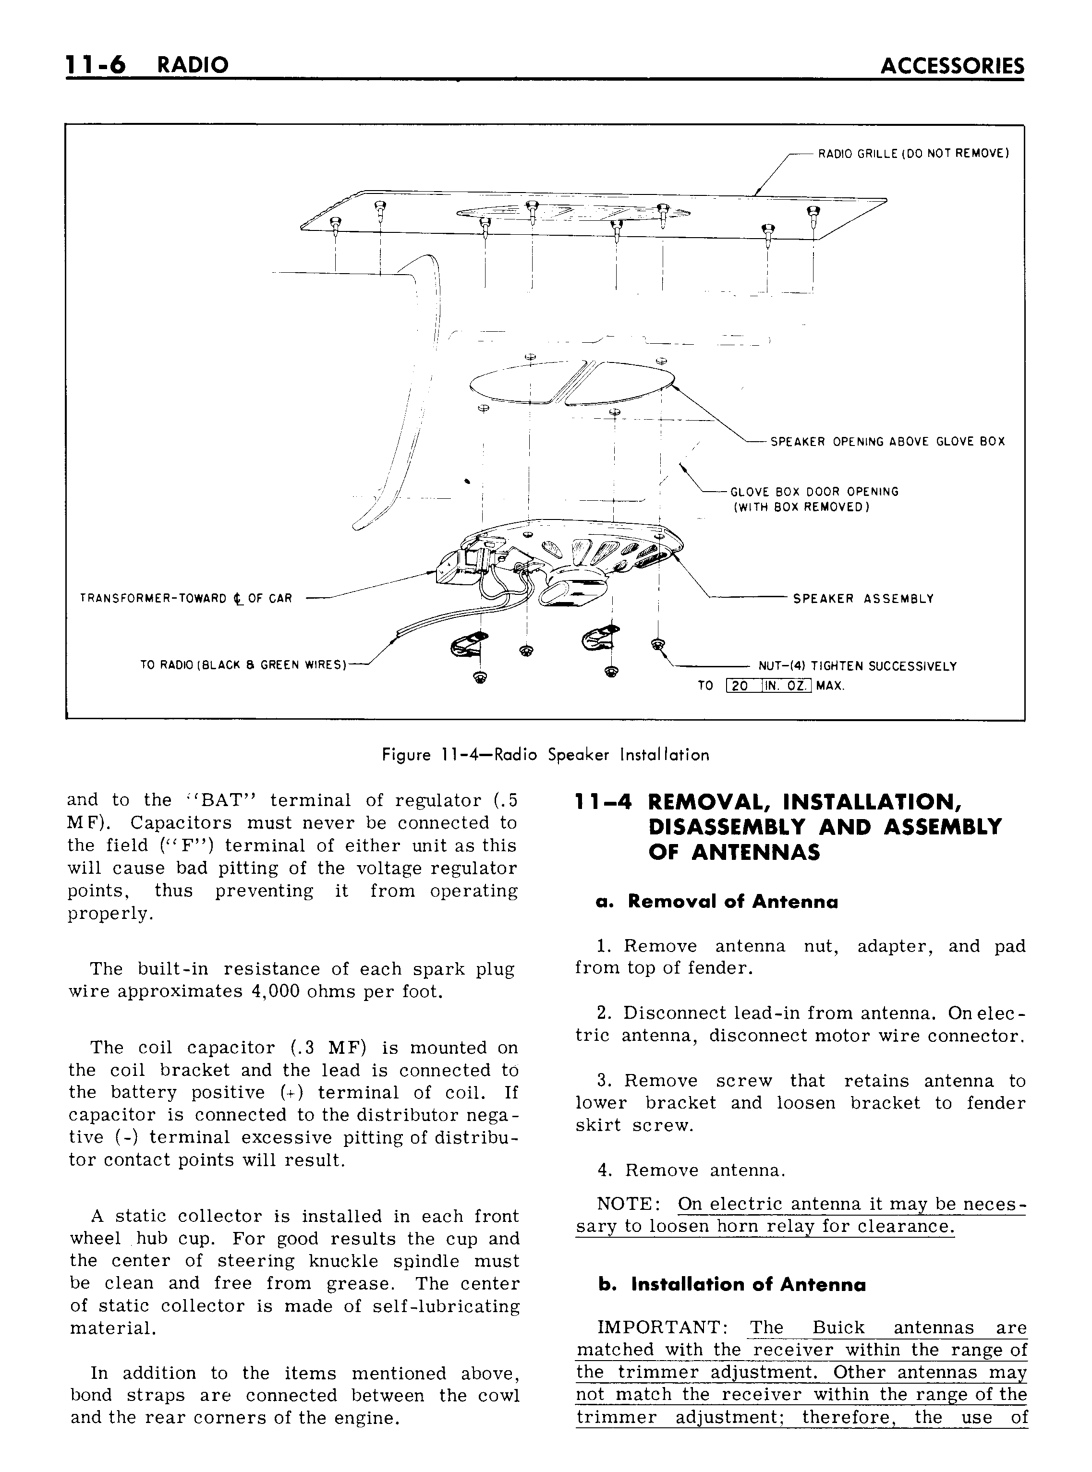 n_11 1961 Buick Shop Manual - Accessories-006-006.jpg